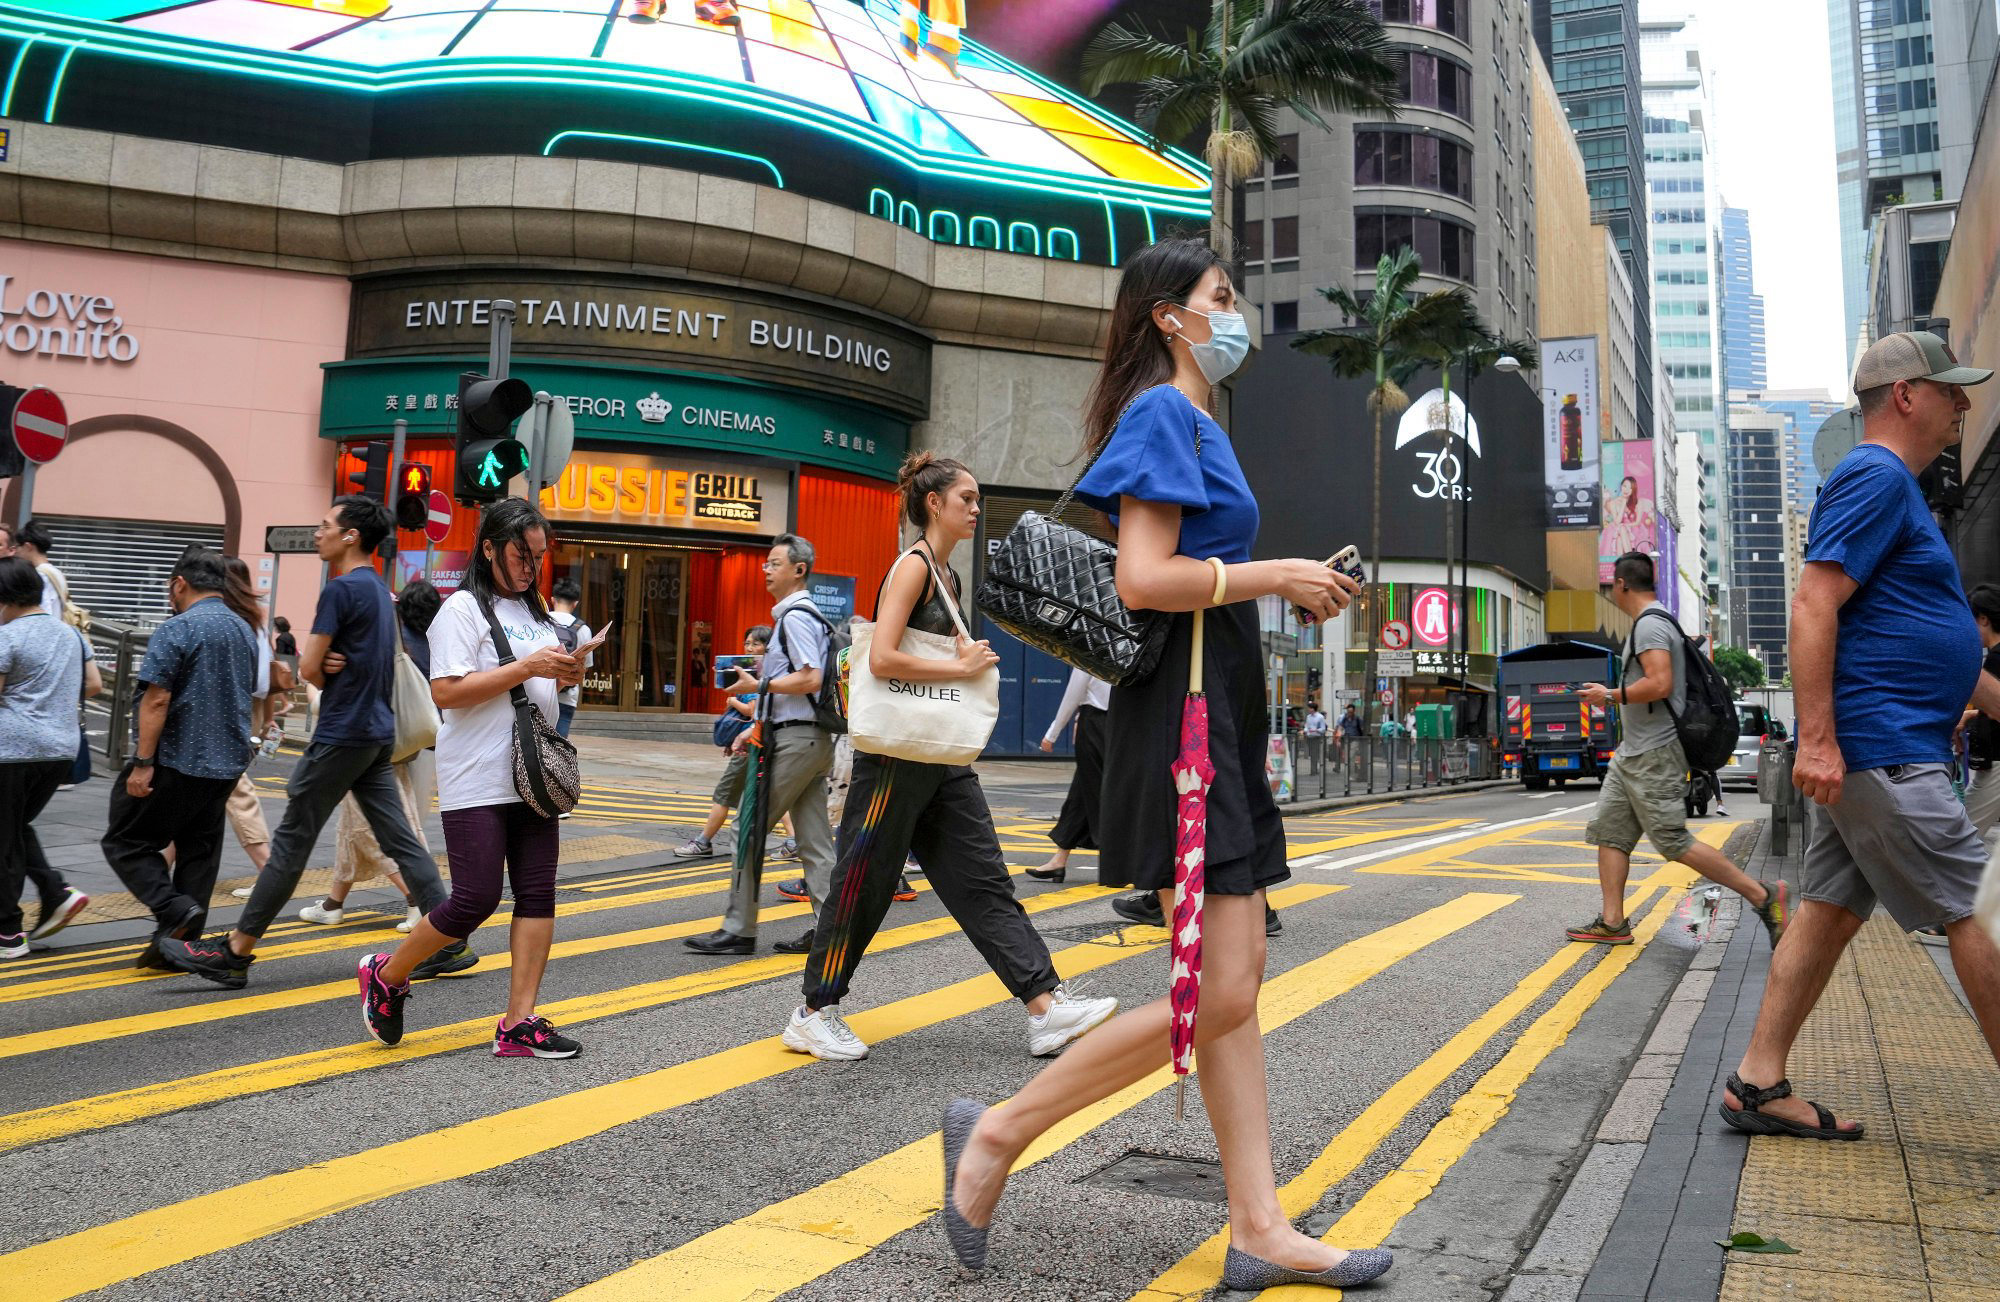 Average annual salary for Hong Kong fresh graduates at HK300,000, 7.8